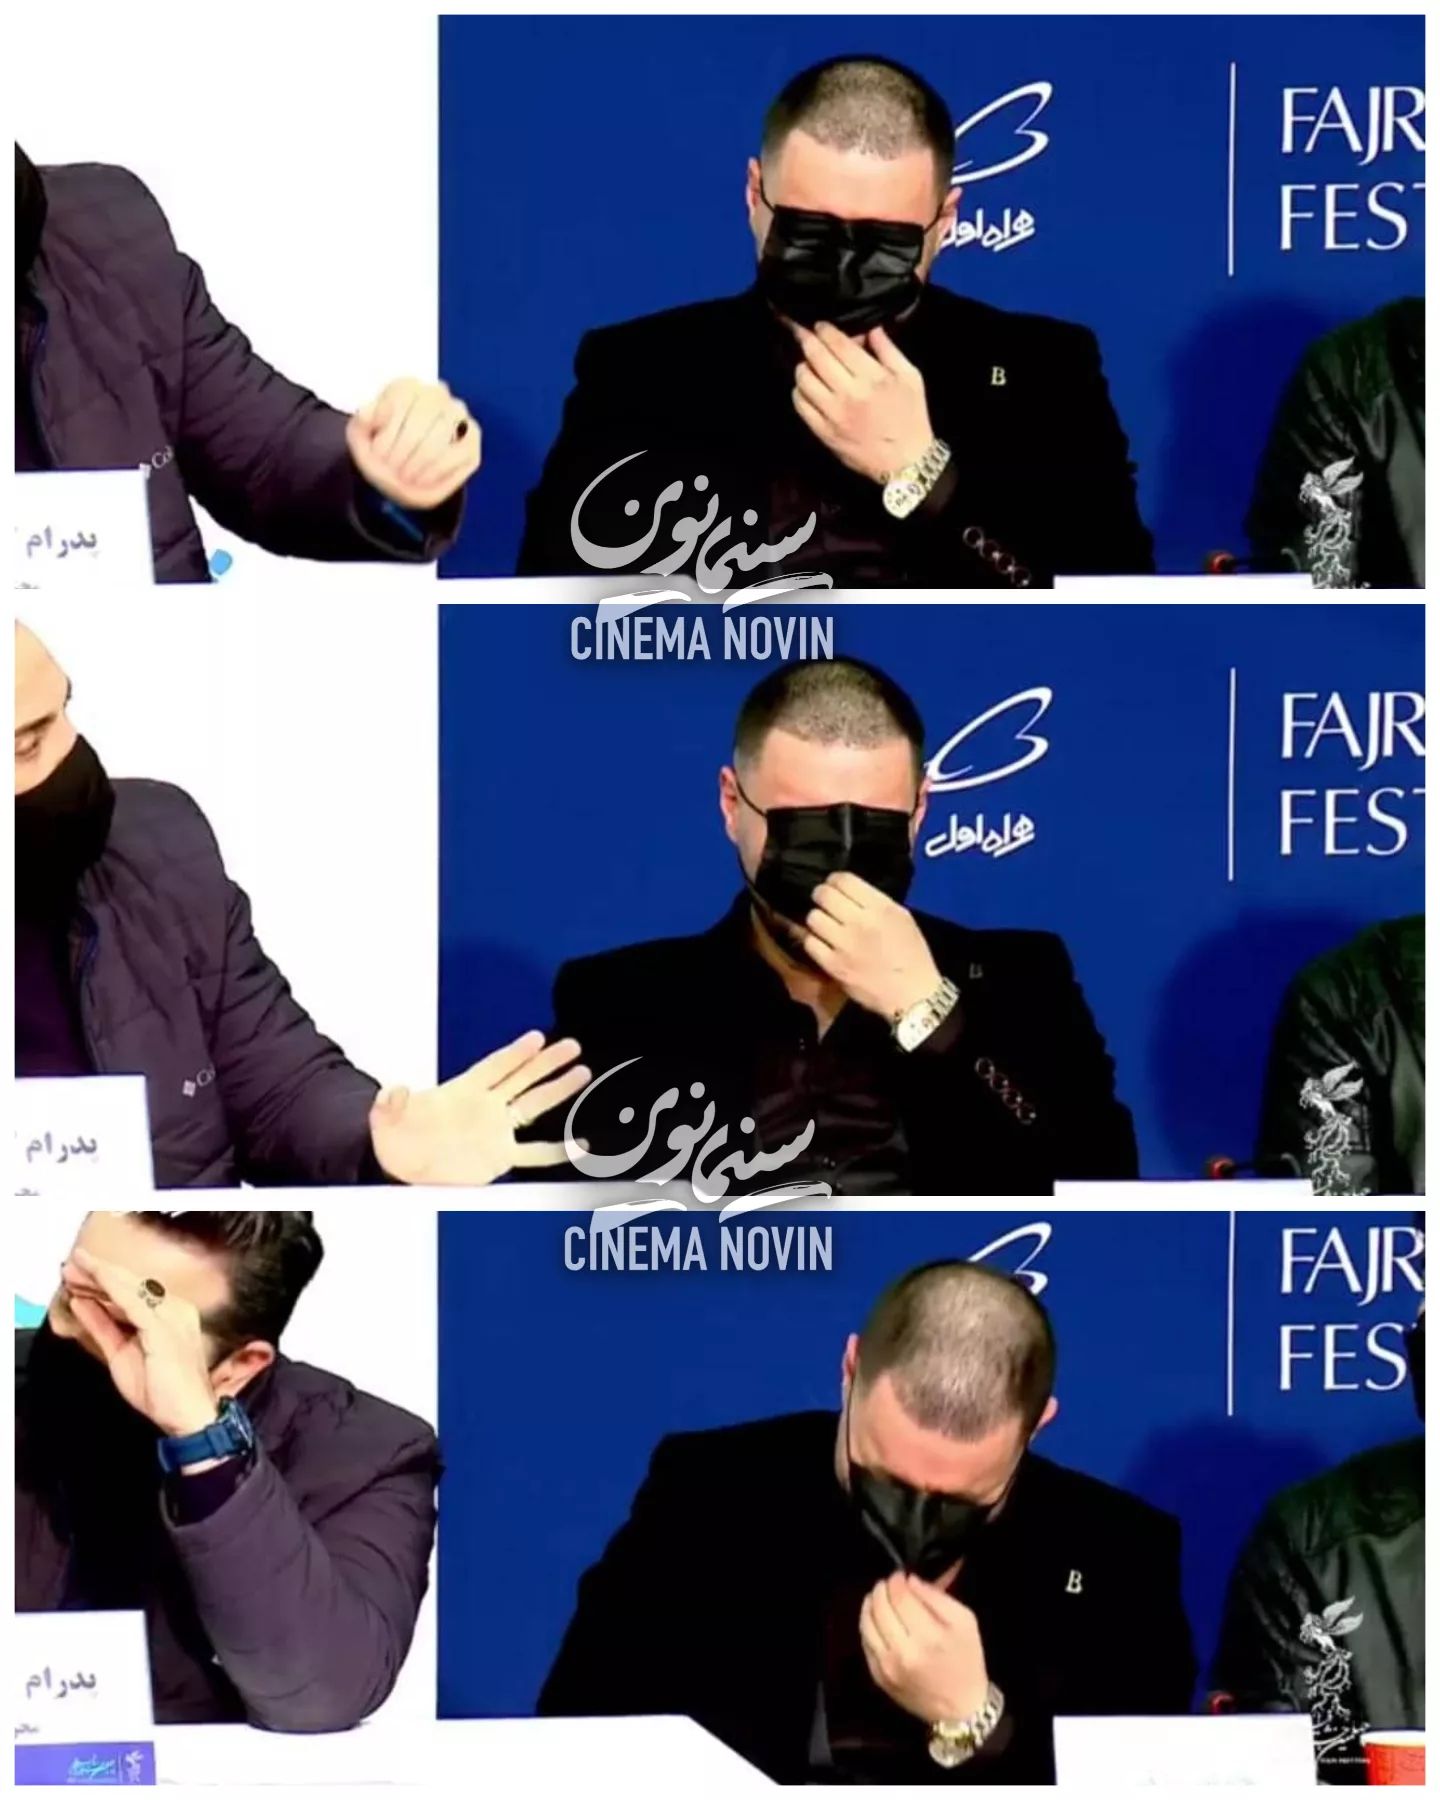 مسخره بازی جواد عزتی با ماسکش در جشنواره فجر